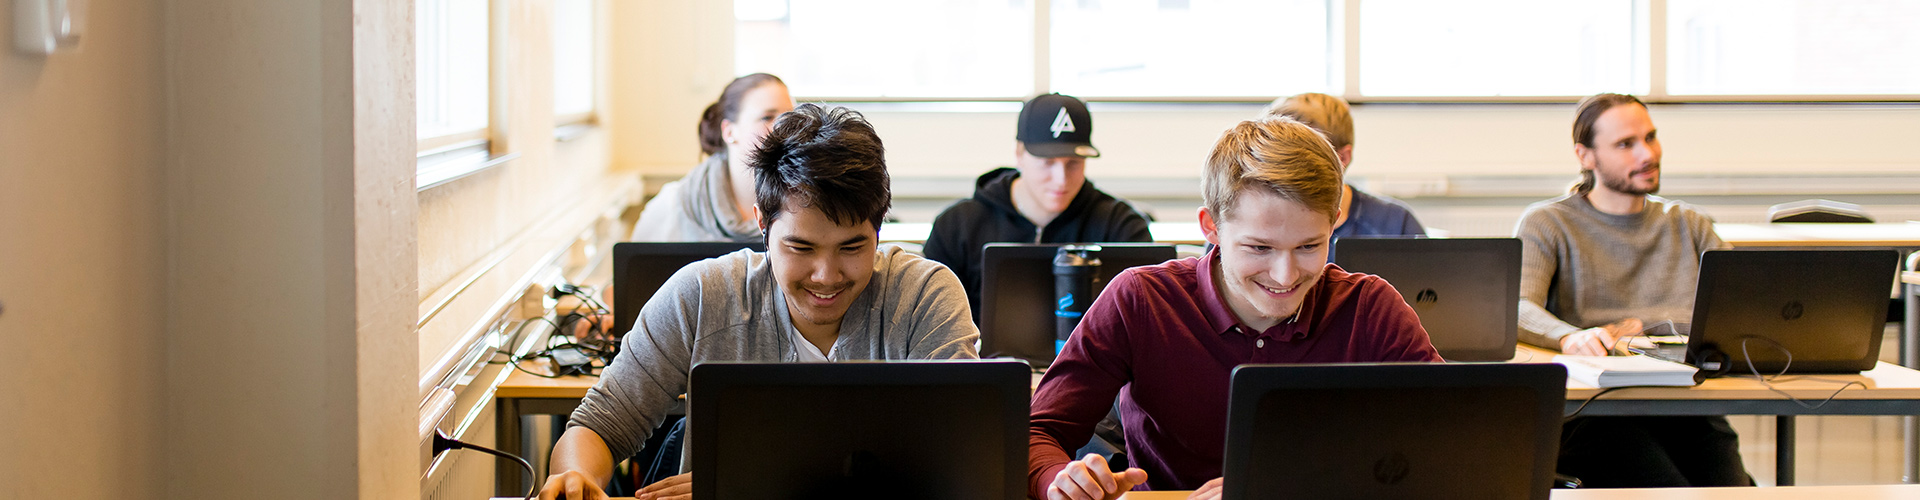 Glada studenter i ett klassrum som studerar 3D-teknik.